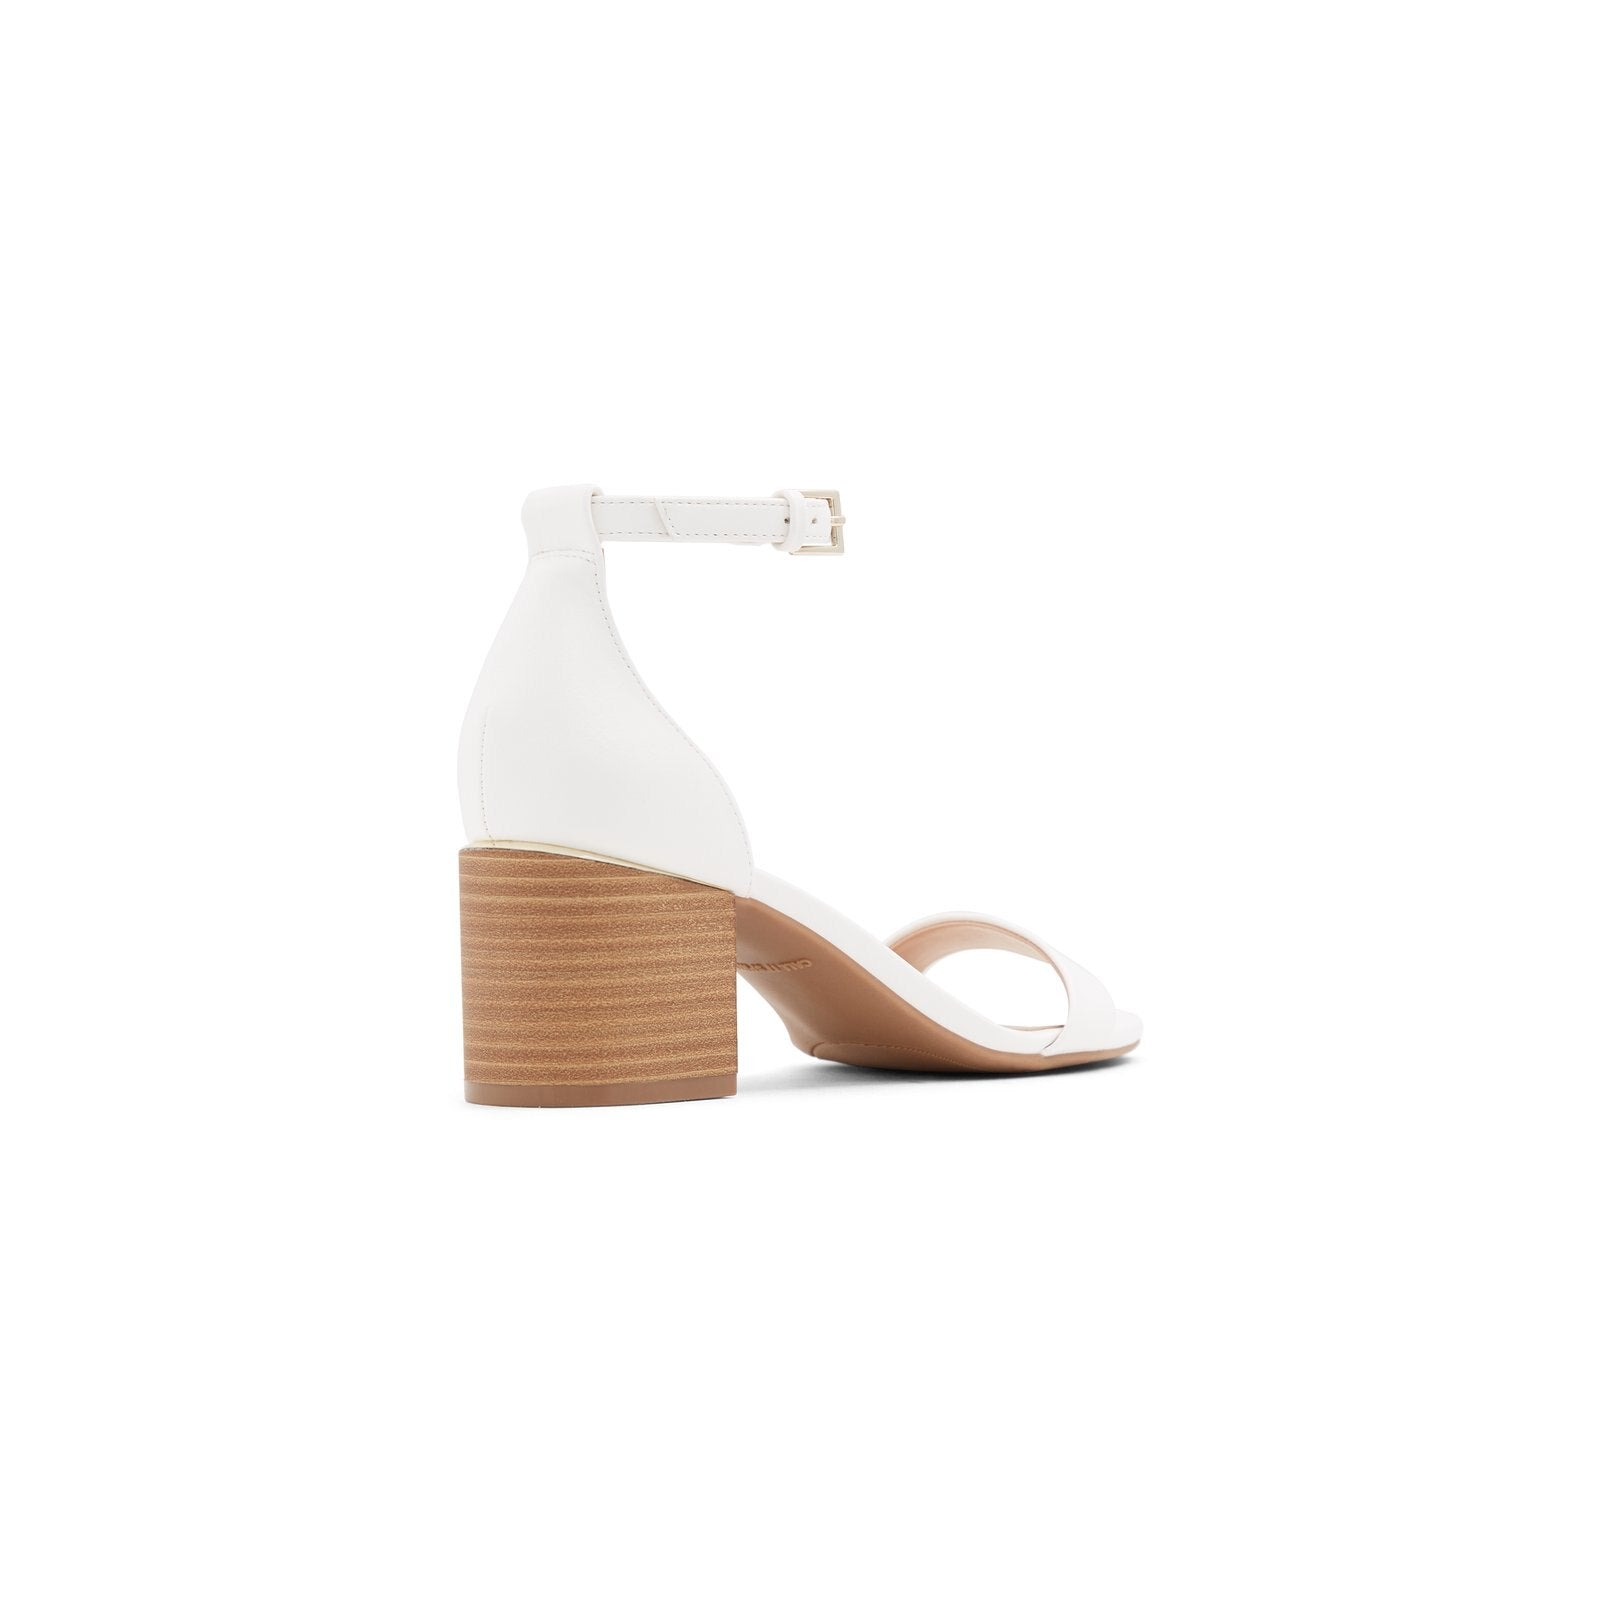 Makenzie Women Shoes - White - CALL IT SPRING KSA